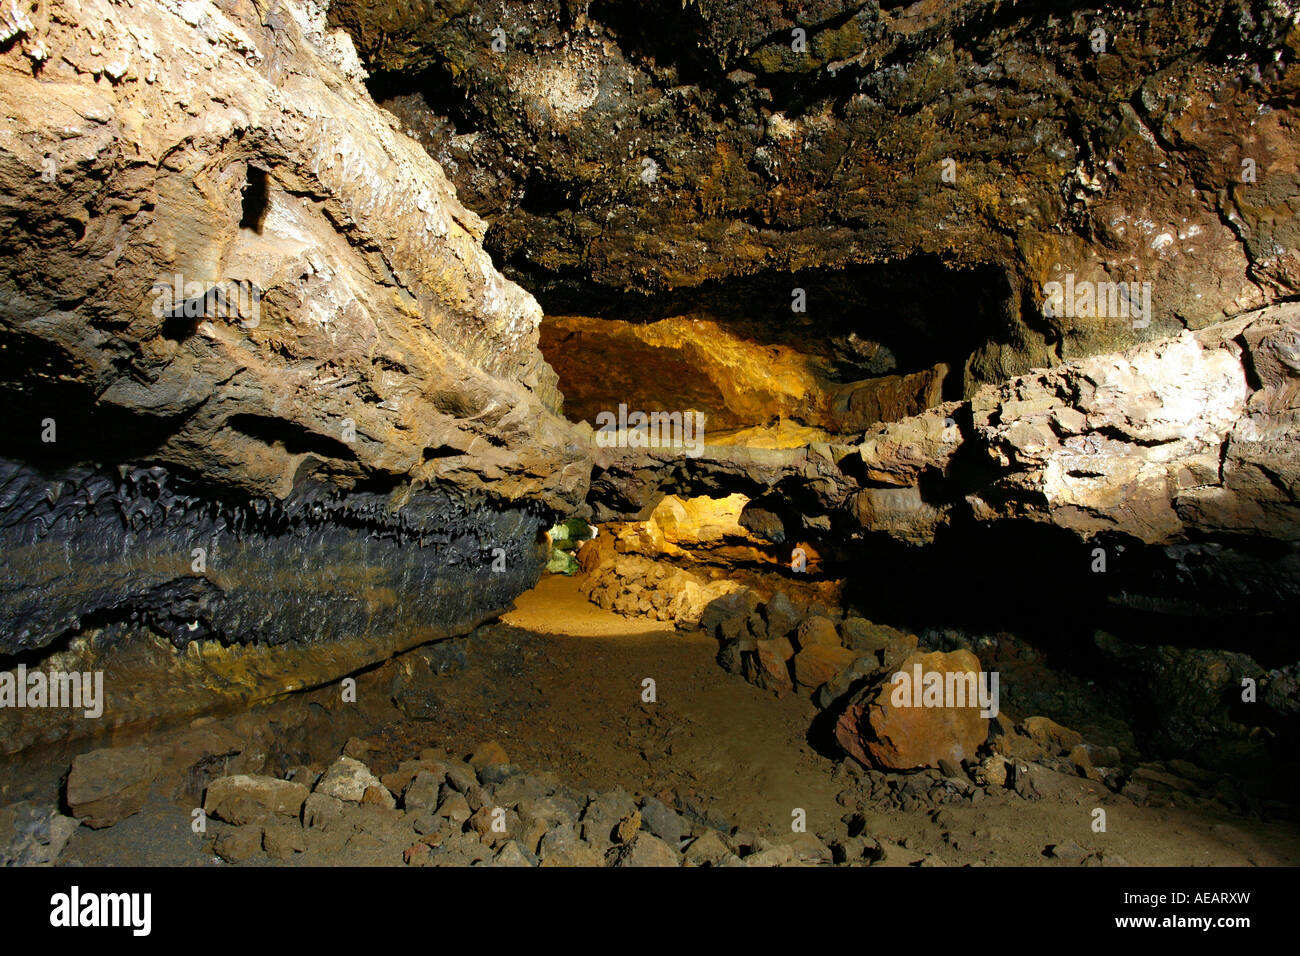 Gruta do Carvao grotte de lave. L'île de São Miguel, Açores, Portugal. Banque D'Images